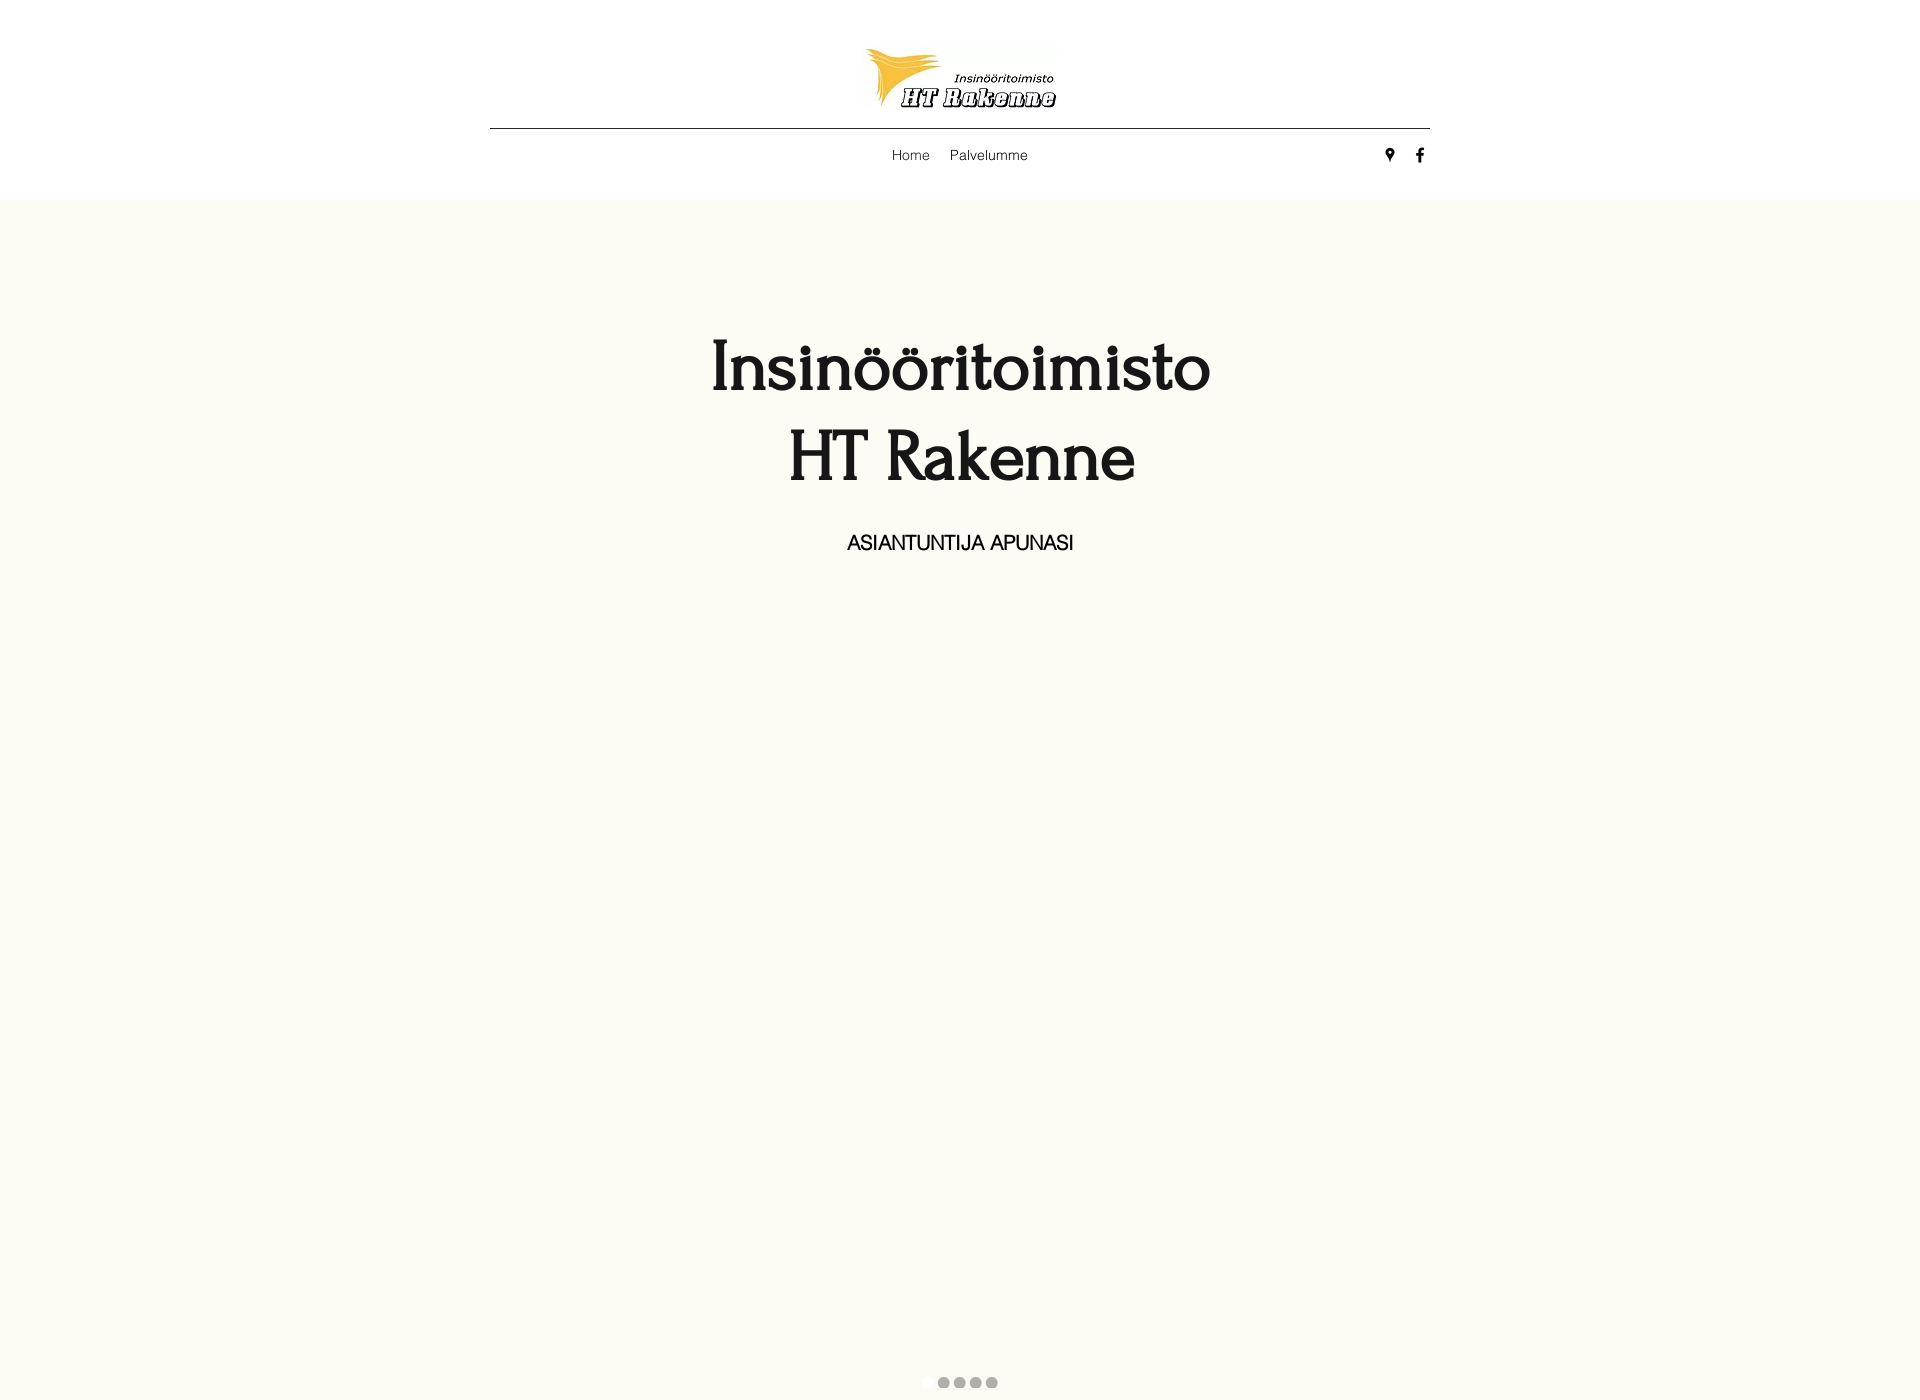 Screenshot for htrakenne.fi